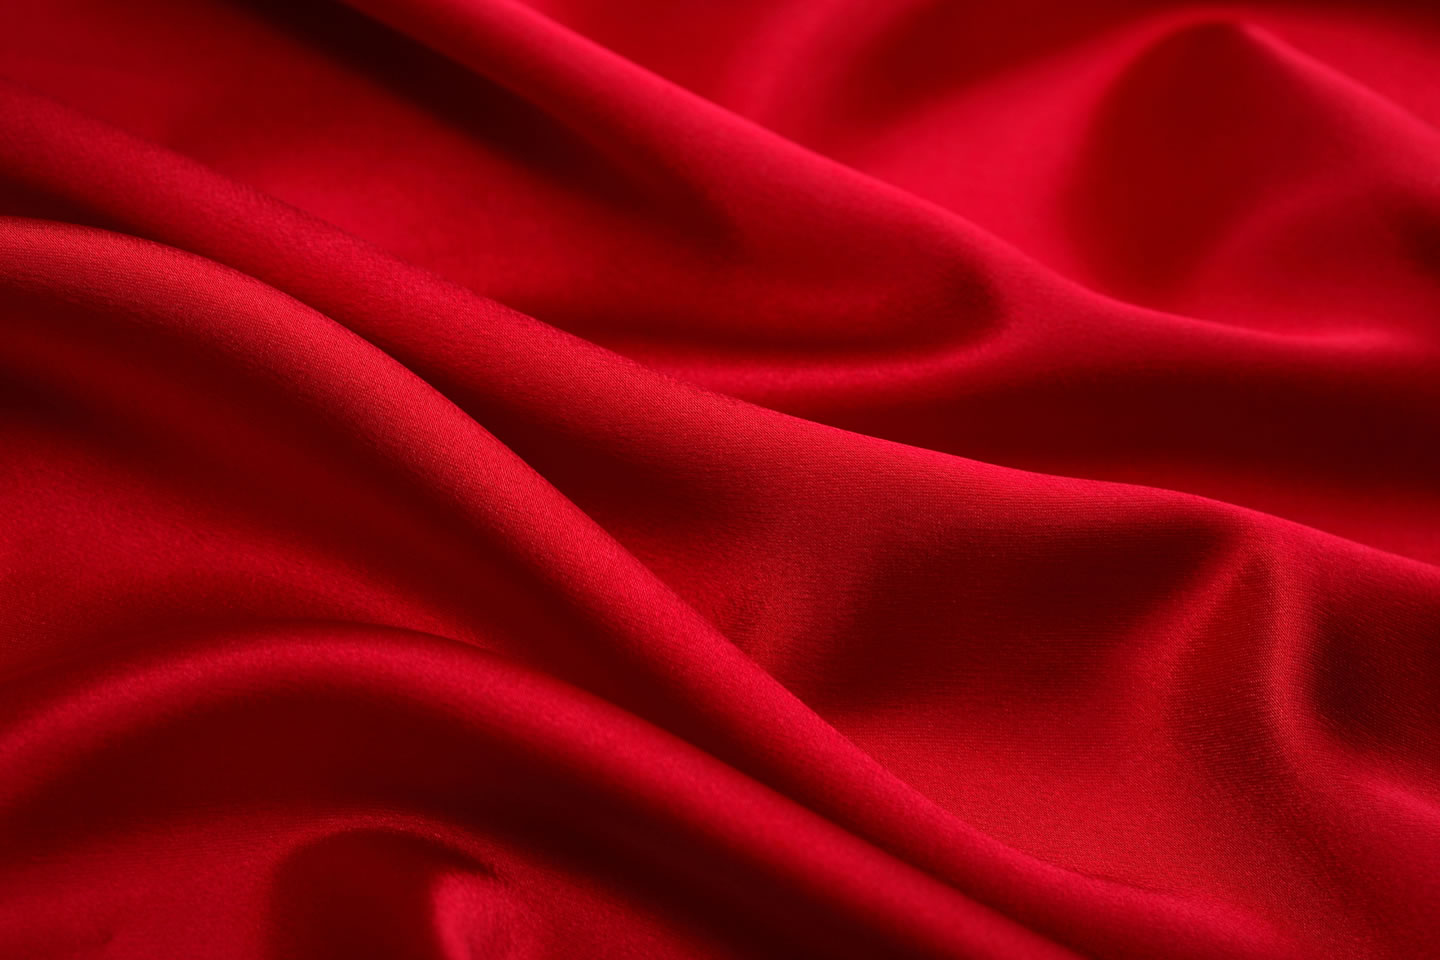 红色绸缎布料图片丝绸质感红色布料图片素材